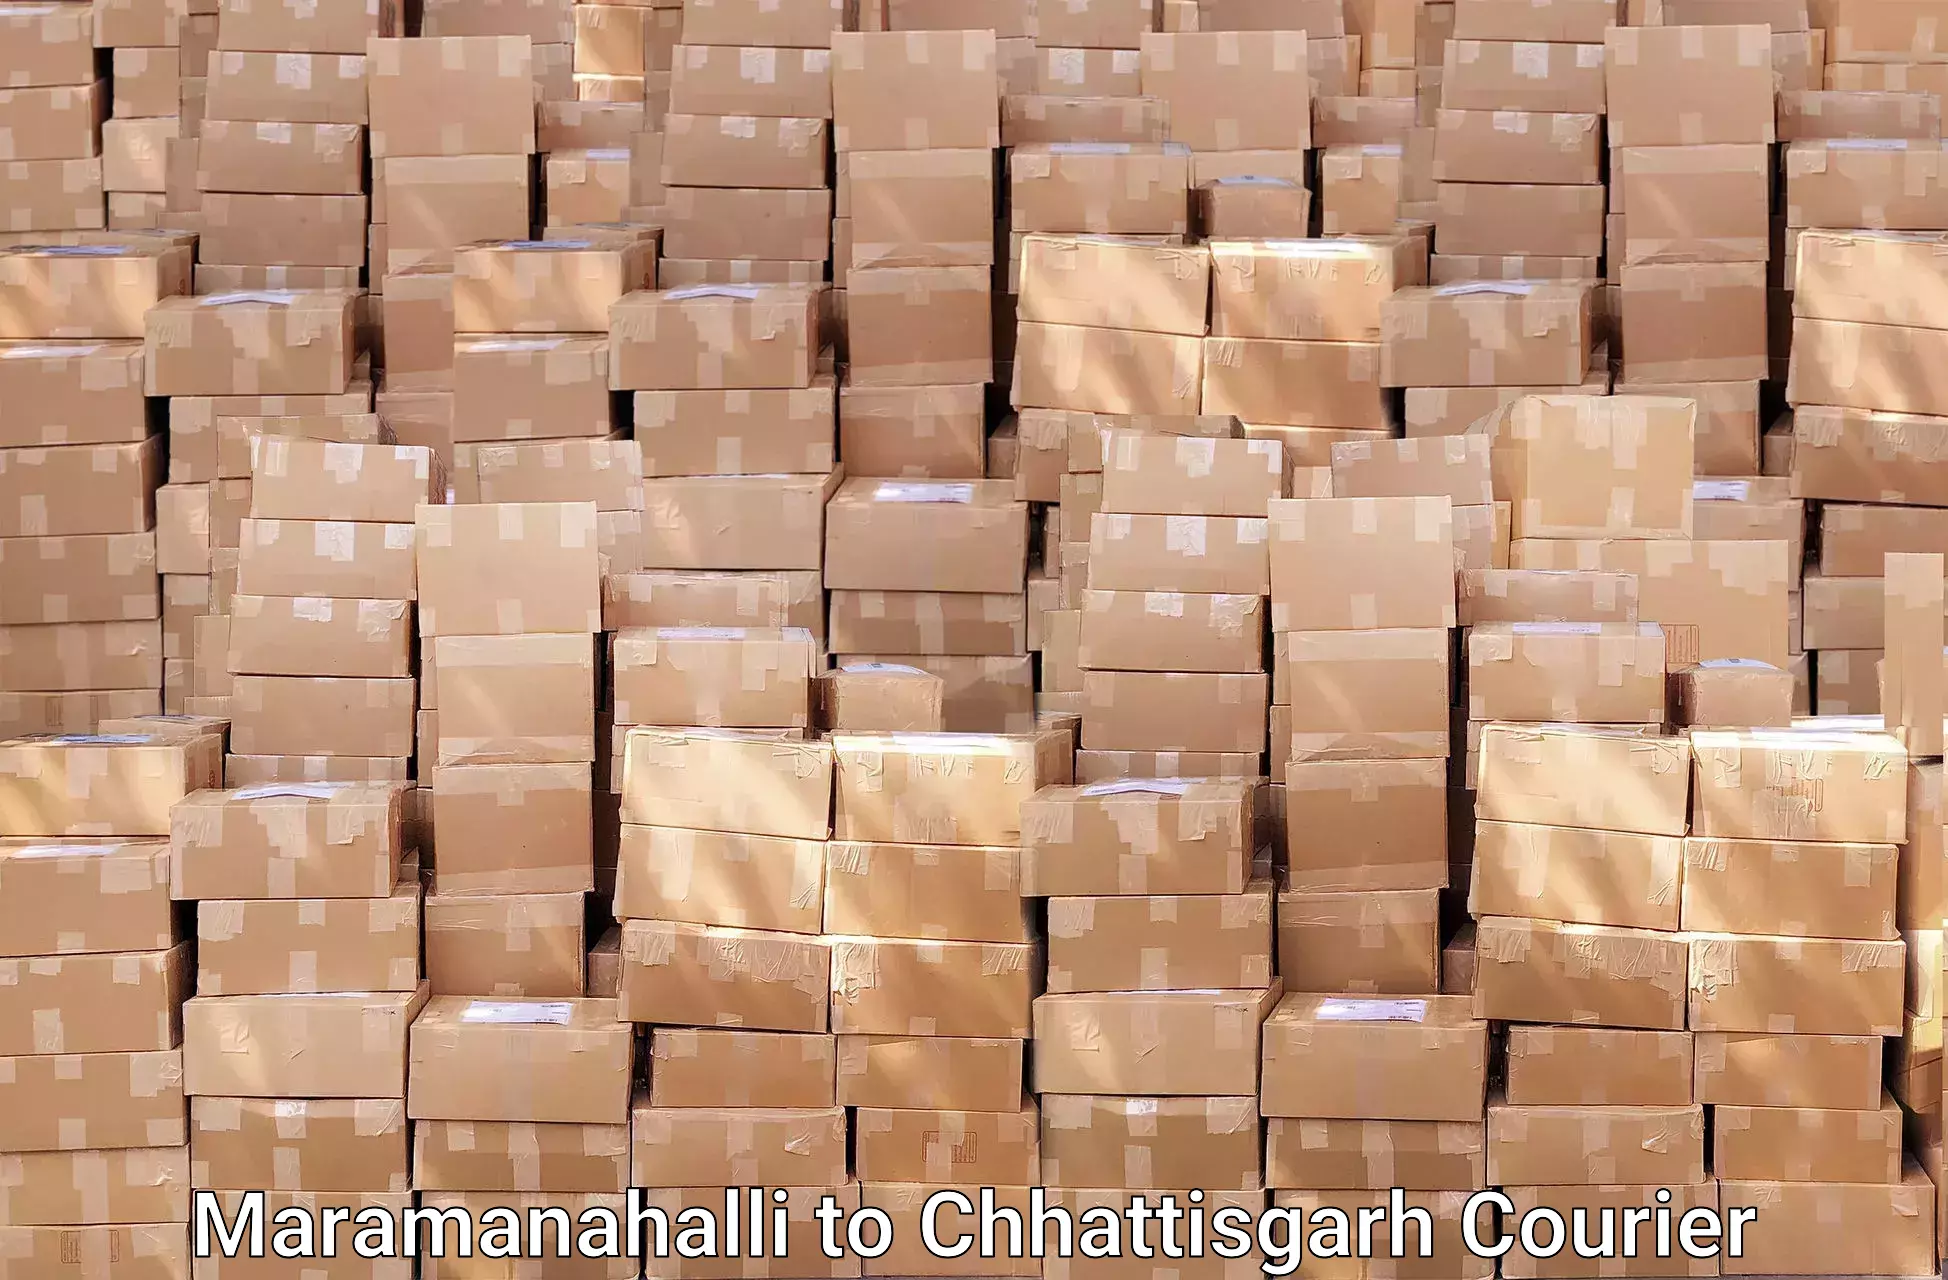 Specialized moving company Maramanahalli to Patna Chhattisgarh